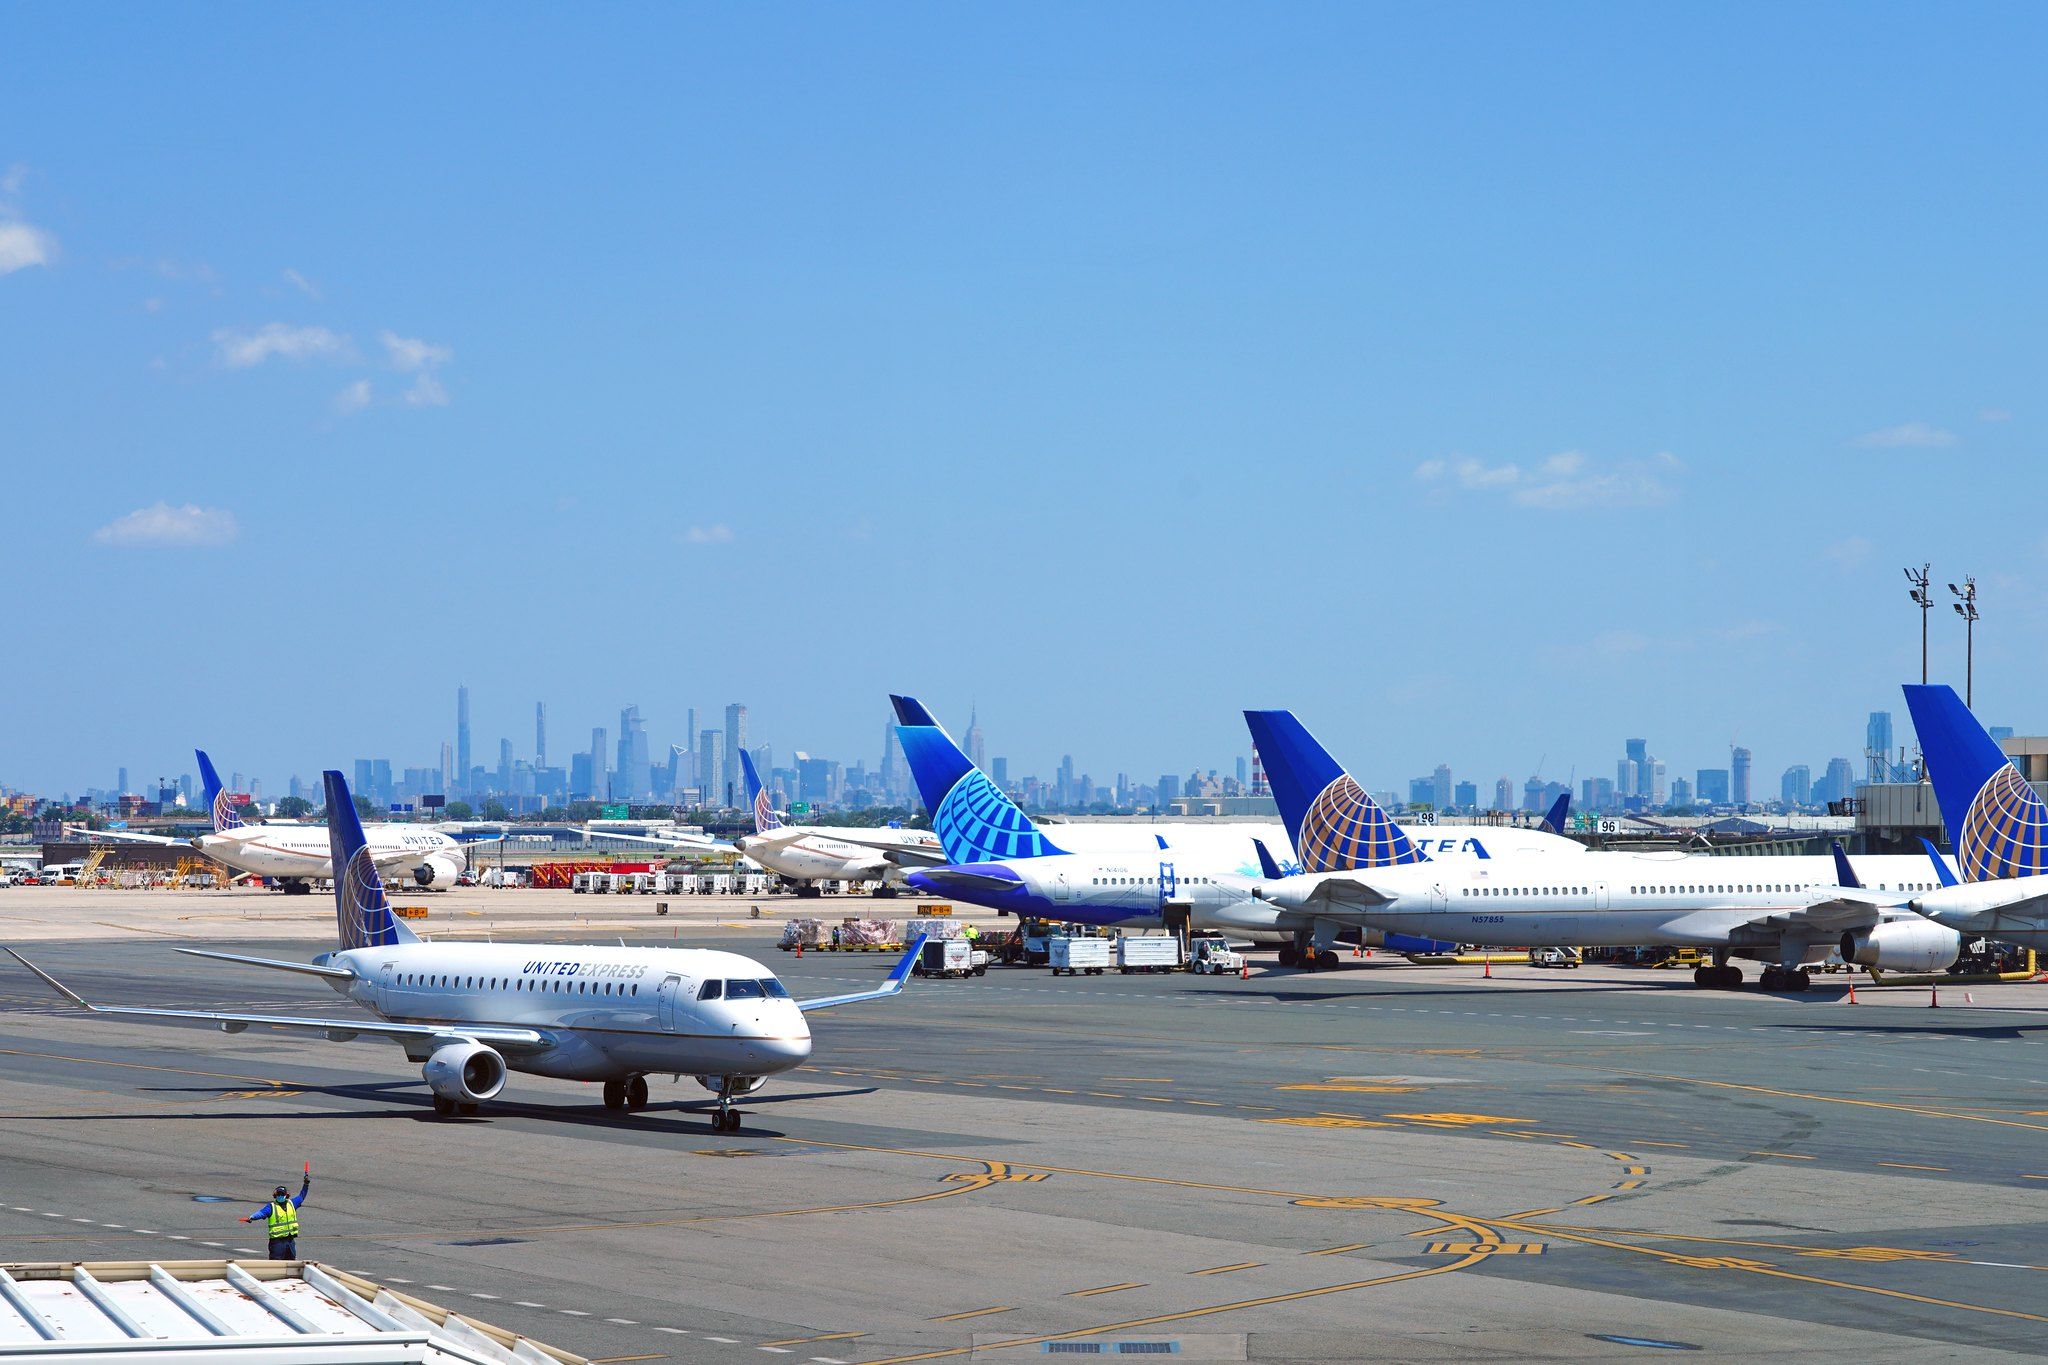 Many United Airlines Aircraft at LGA airport.